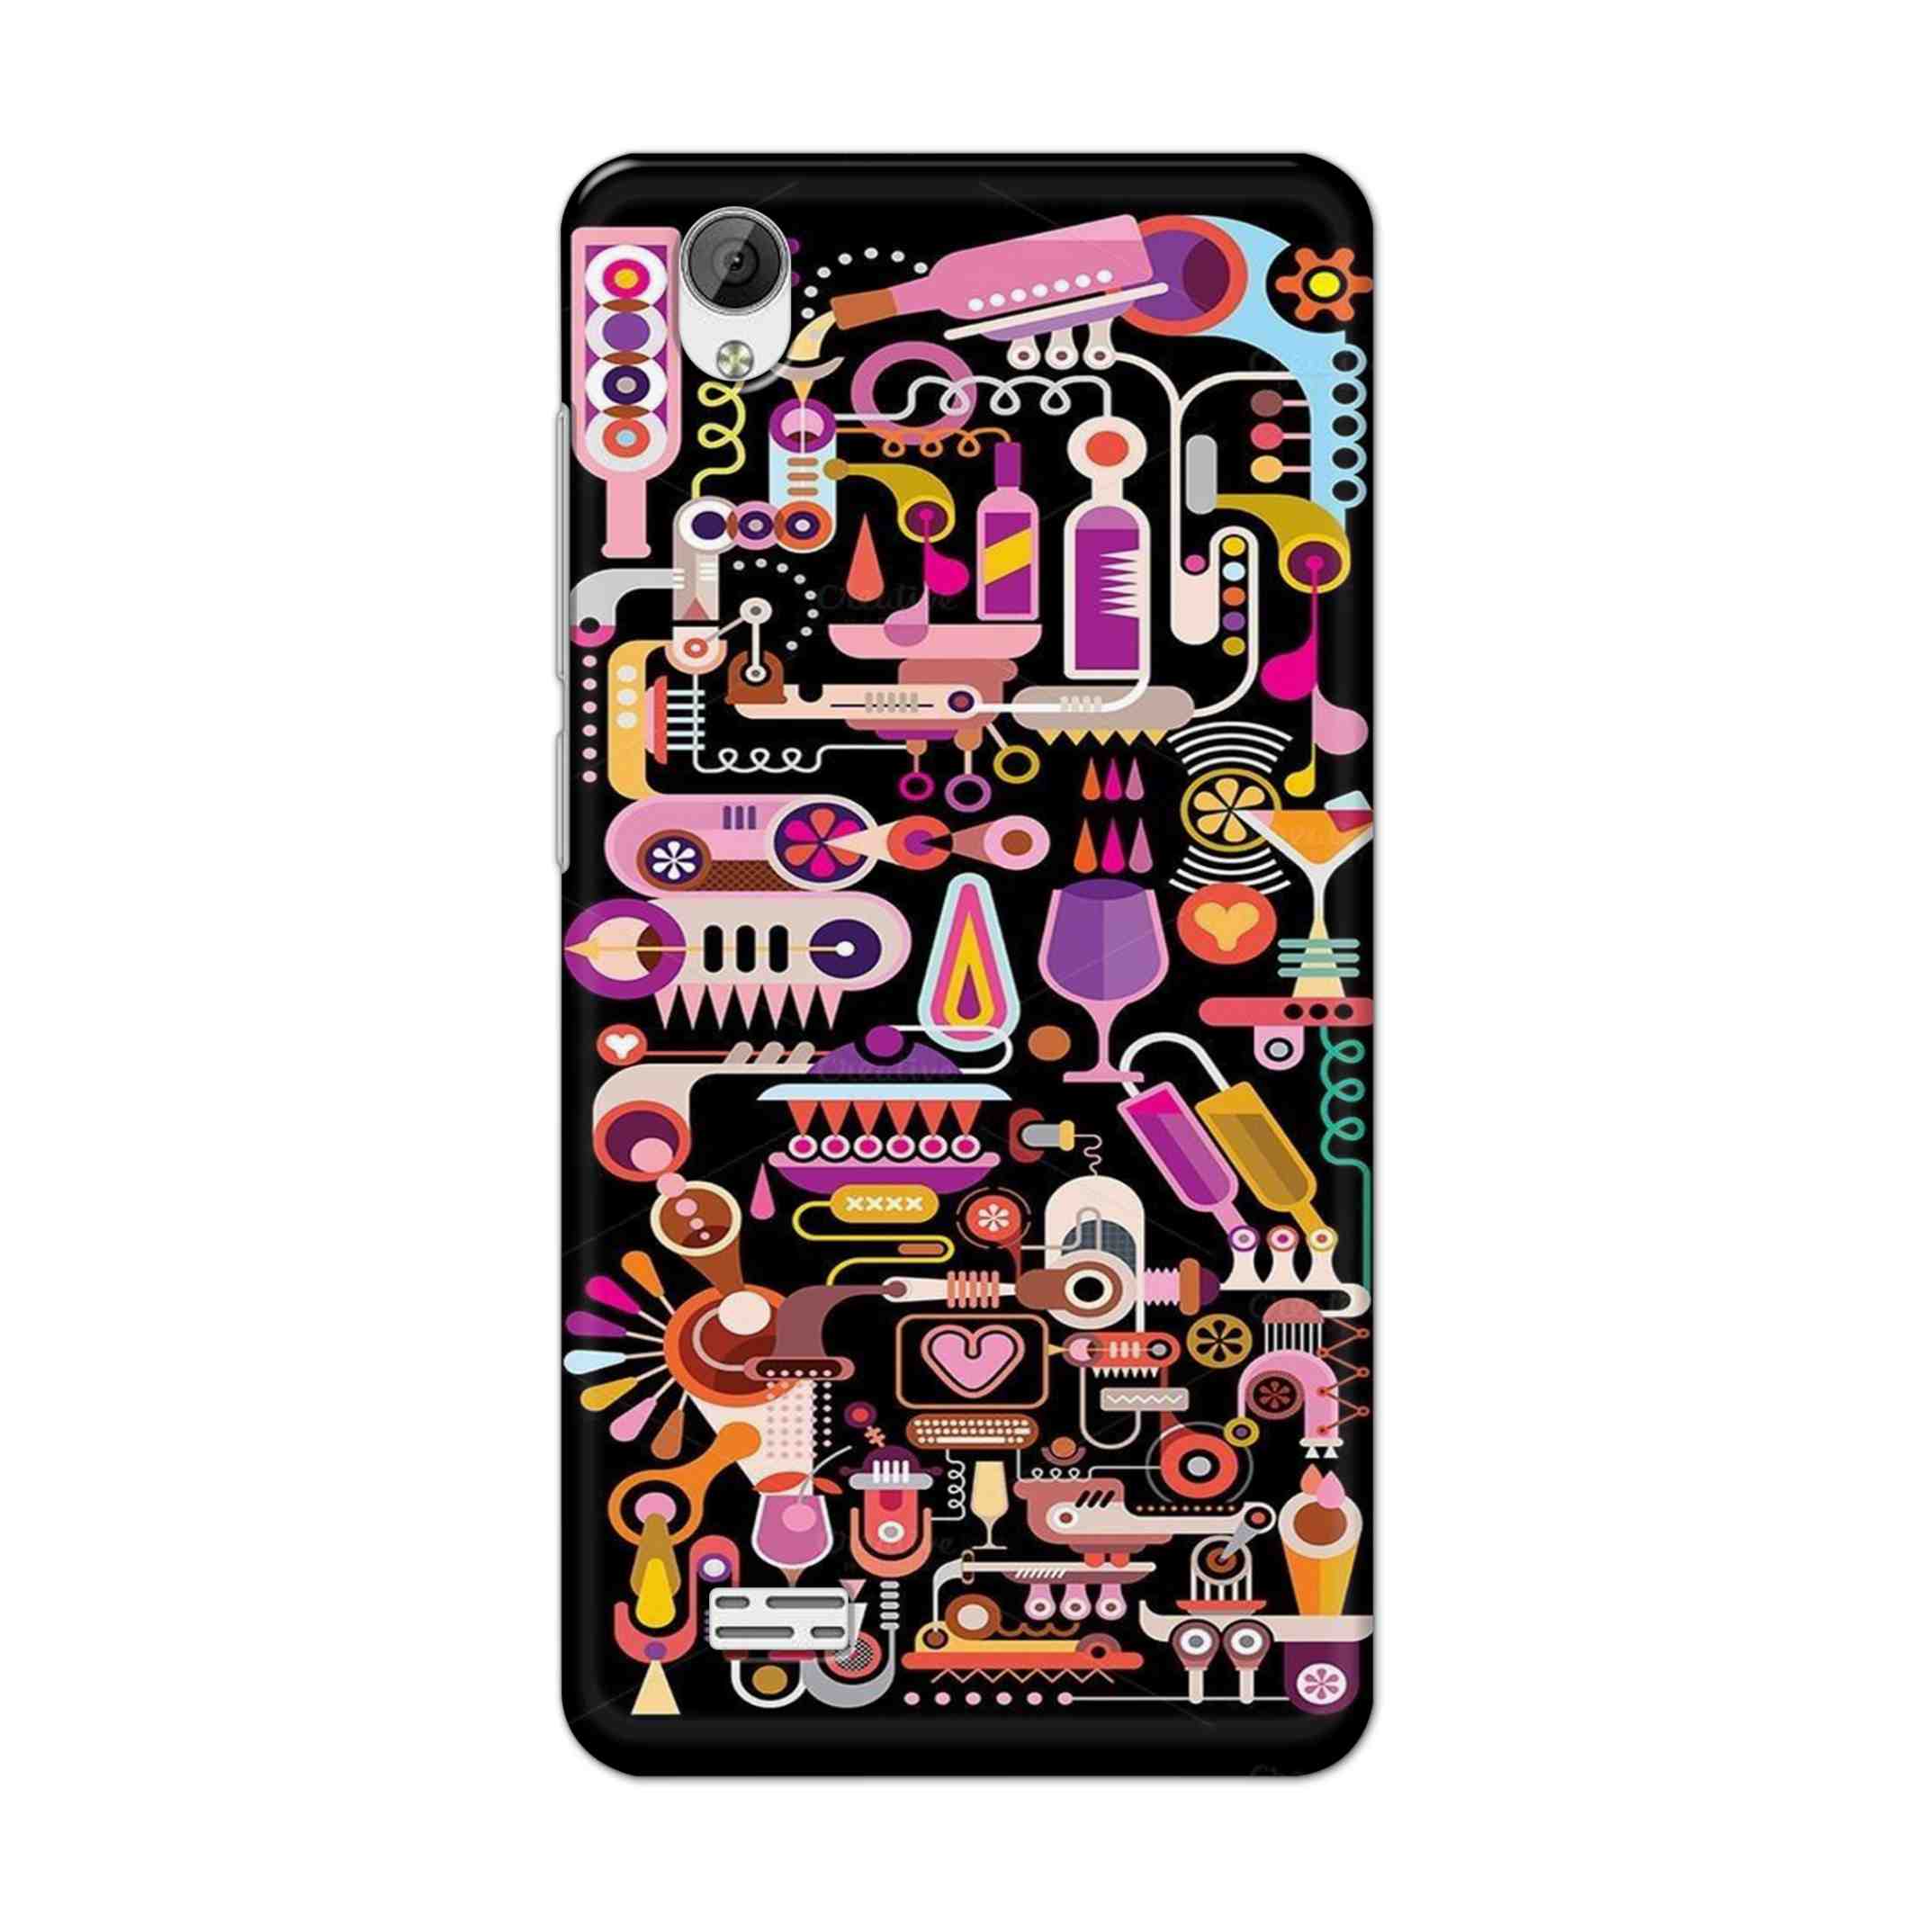 Buy Lab Art Hard Back Mobile Phone Case Cover For Vivo Y31 Online